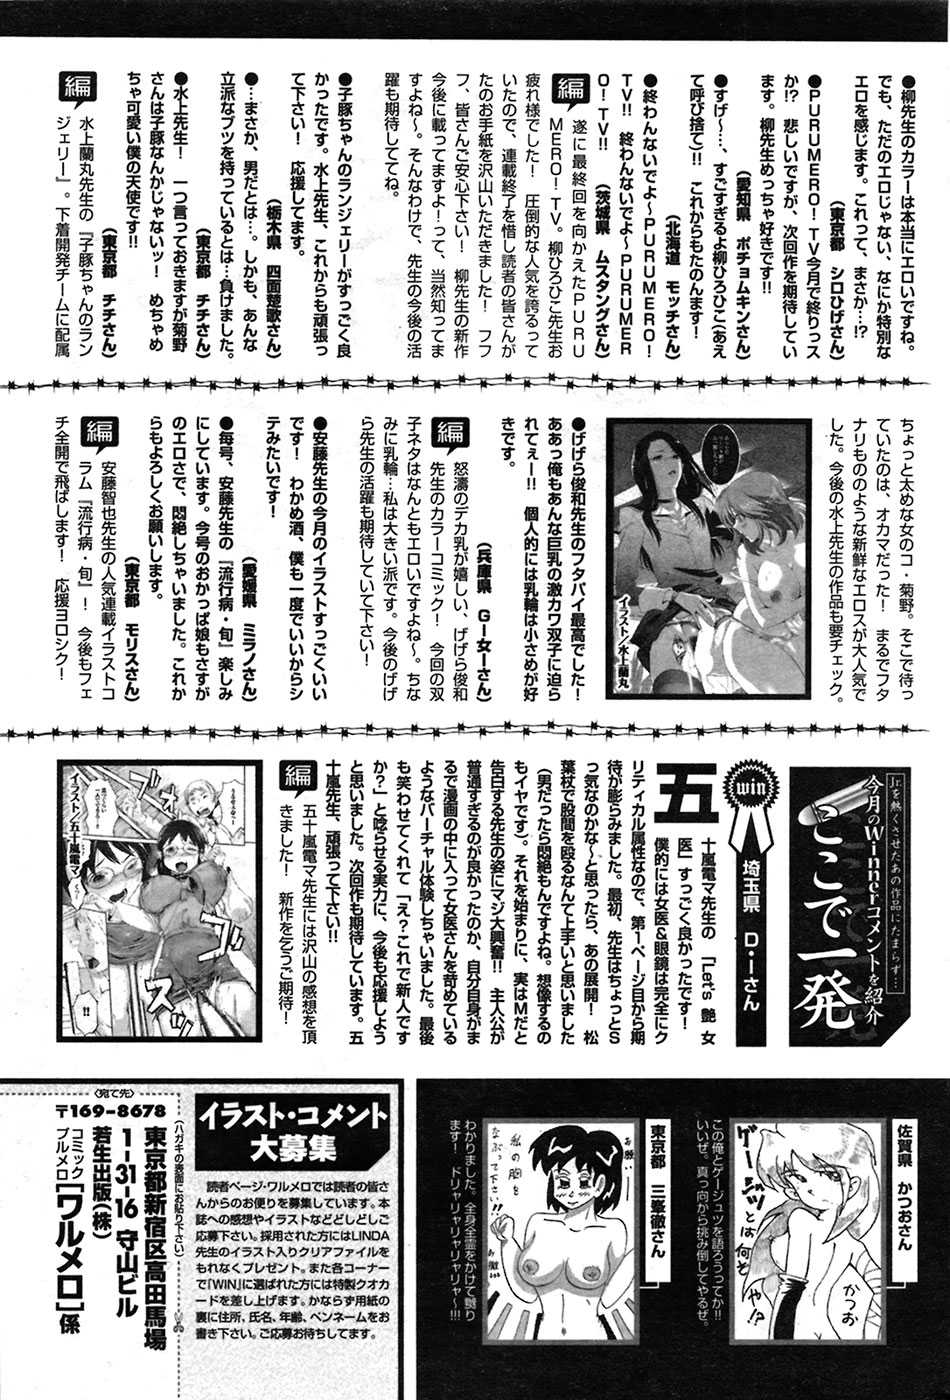 Comic Purumero 2009-06 Vol.30 COMIC プルメロ 2009年06月号 Vol.30